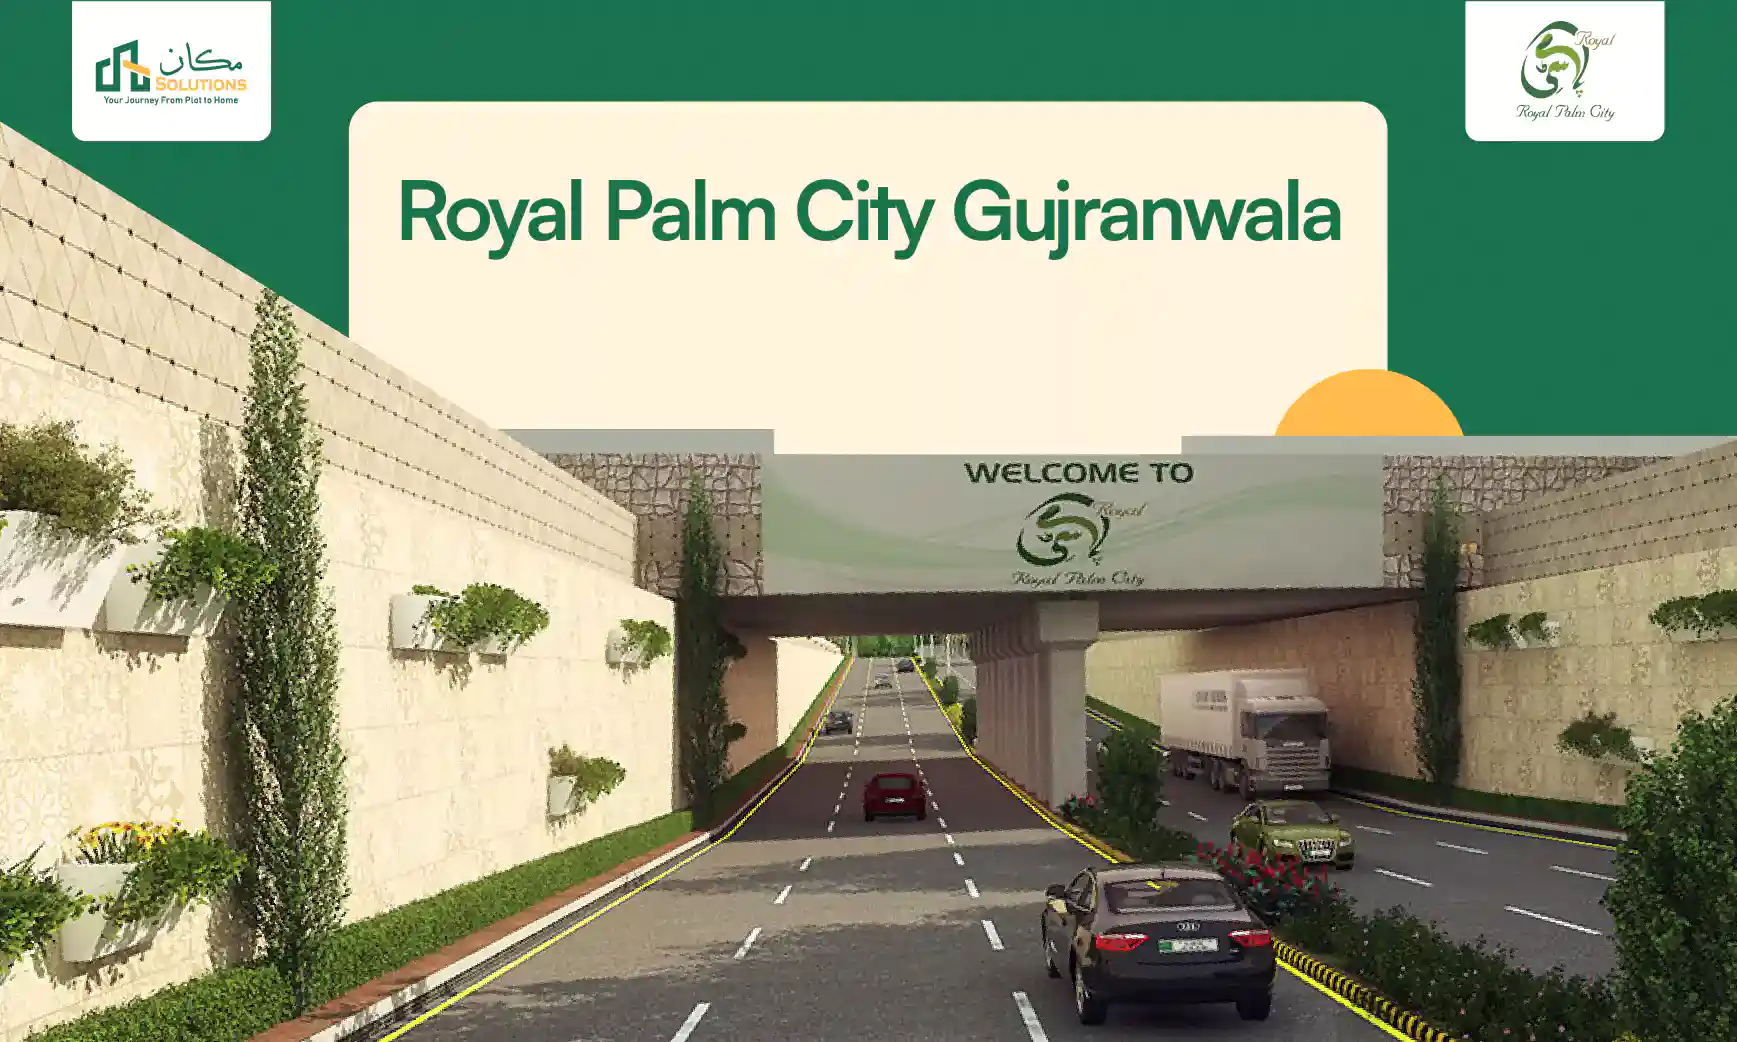 Royal Palm City Gujranwala